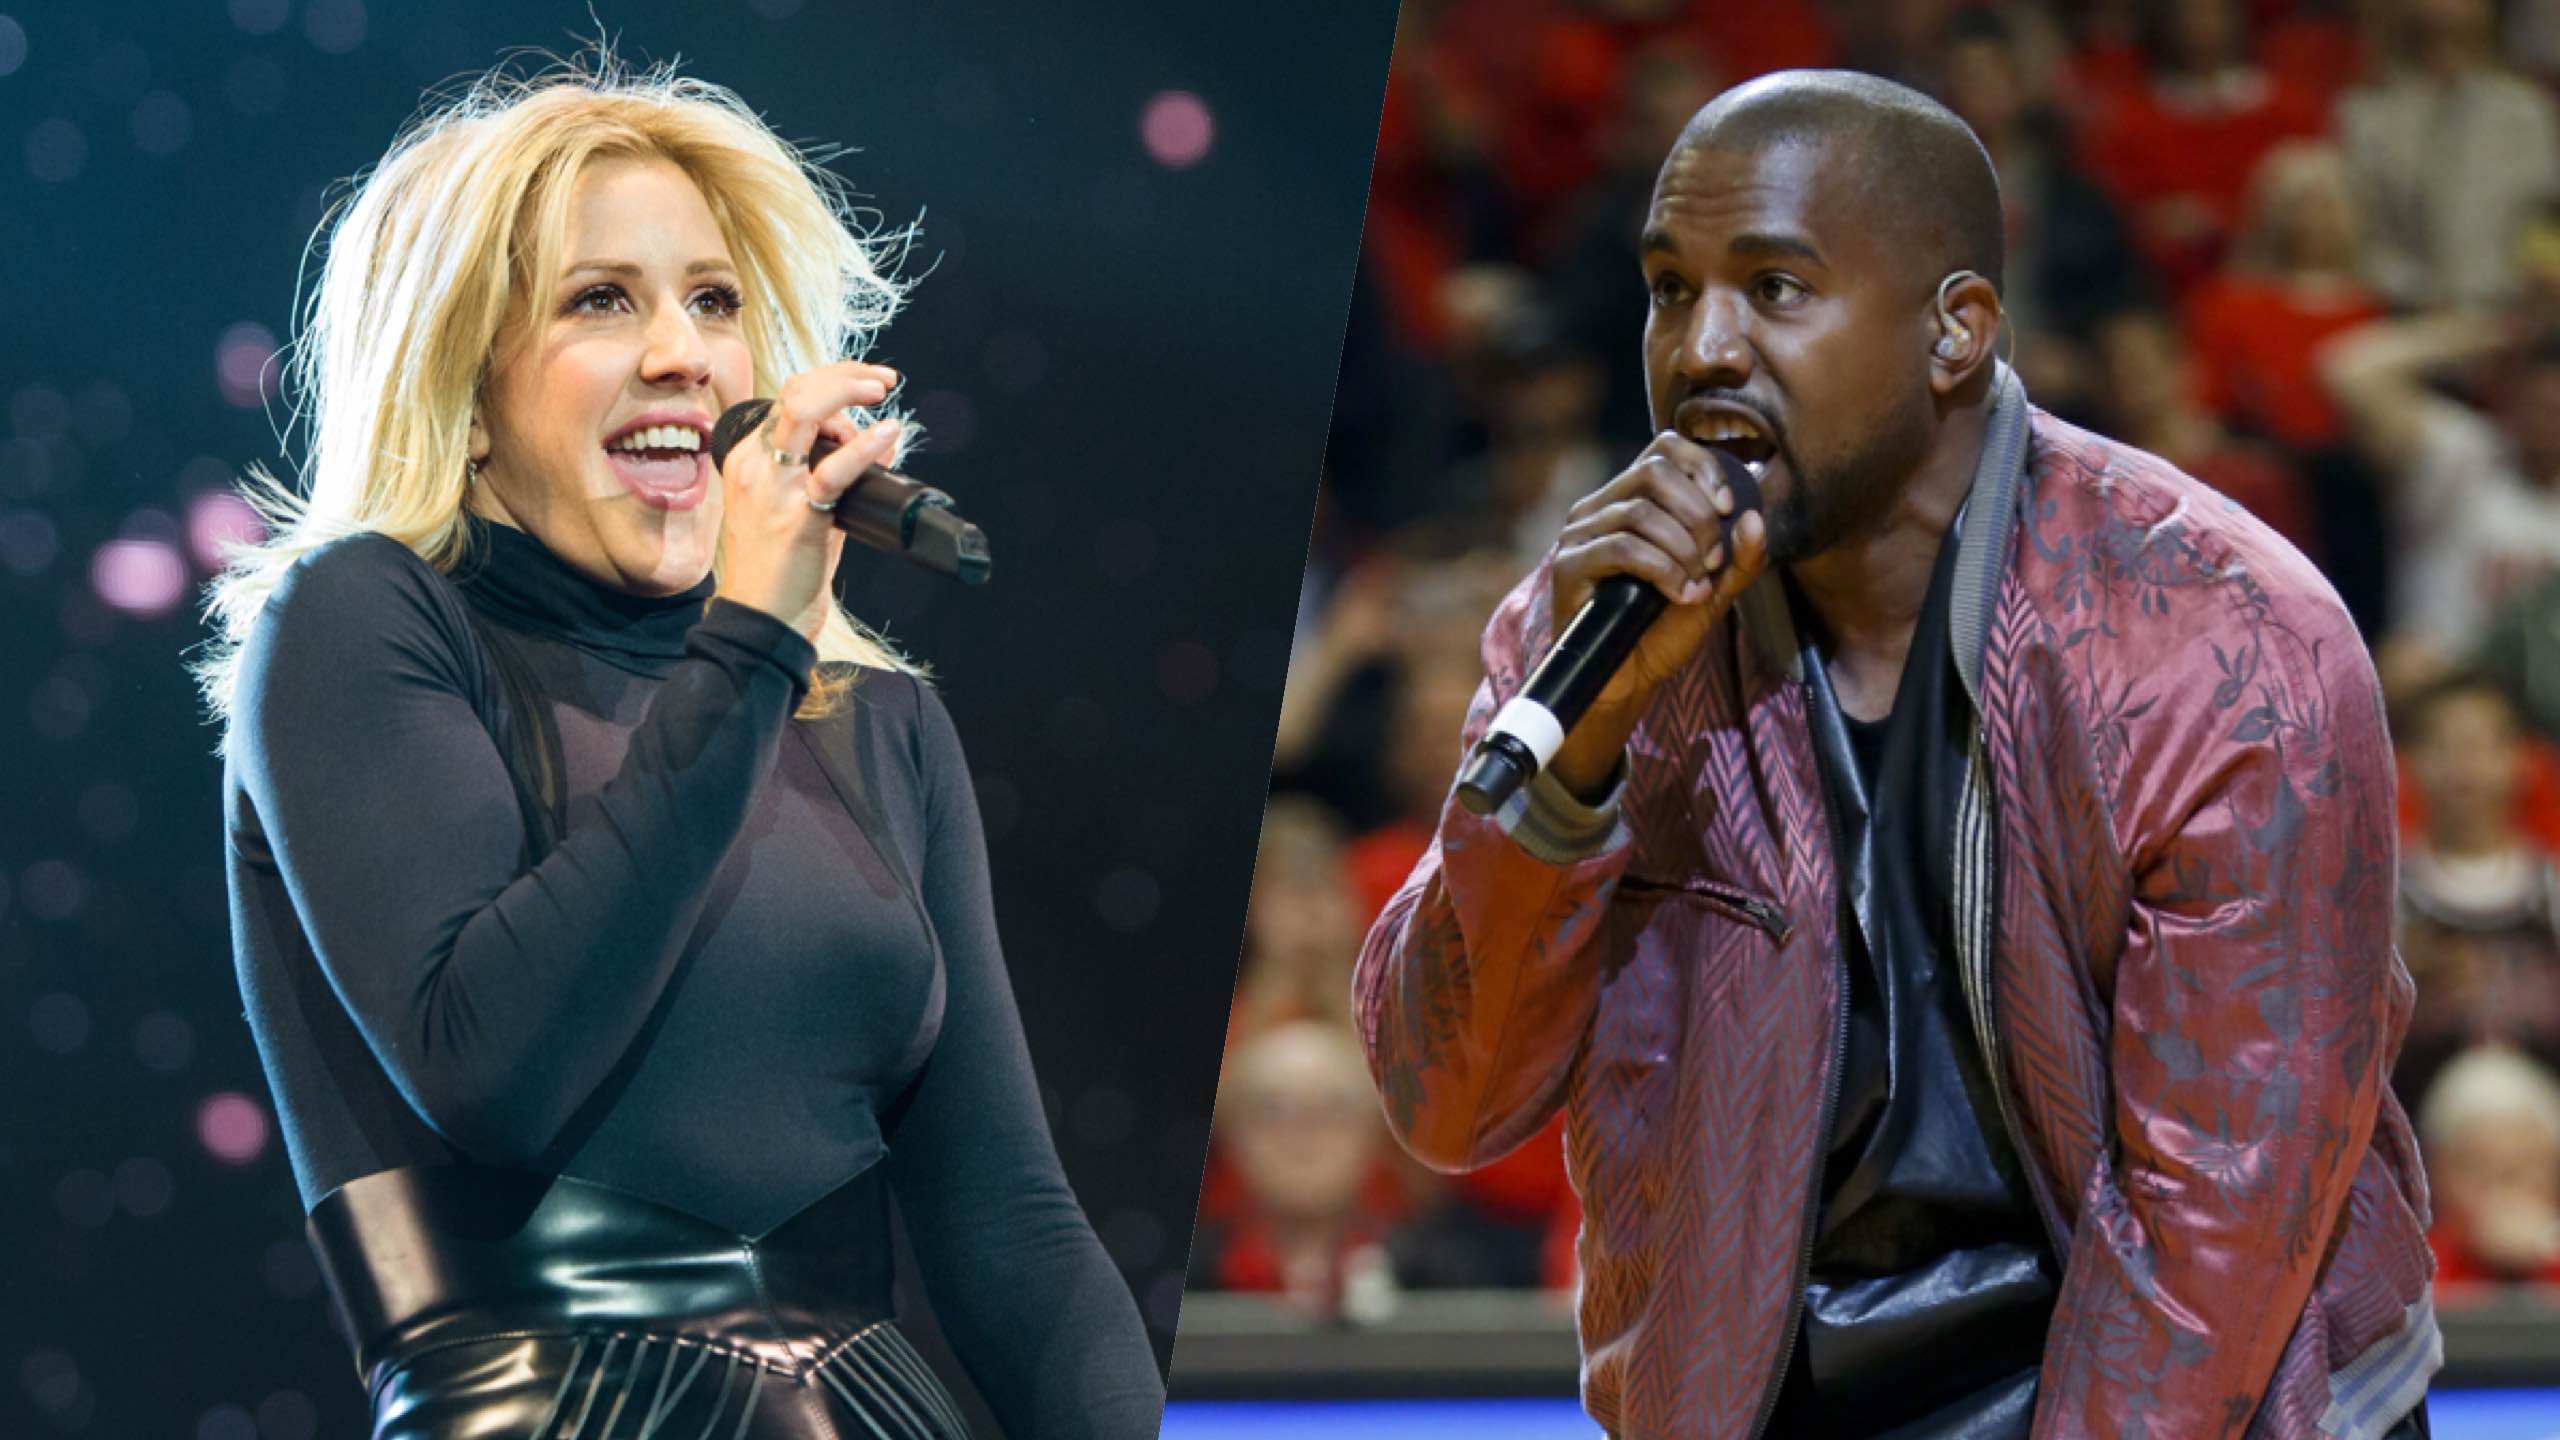 Kanye West, Ellie Goulding to use fan lyrics in anti-poverty album